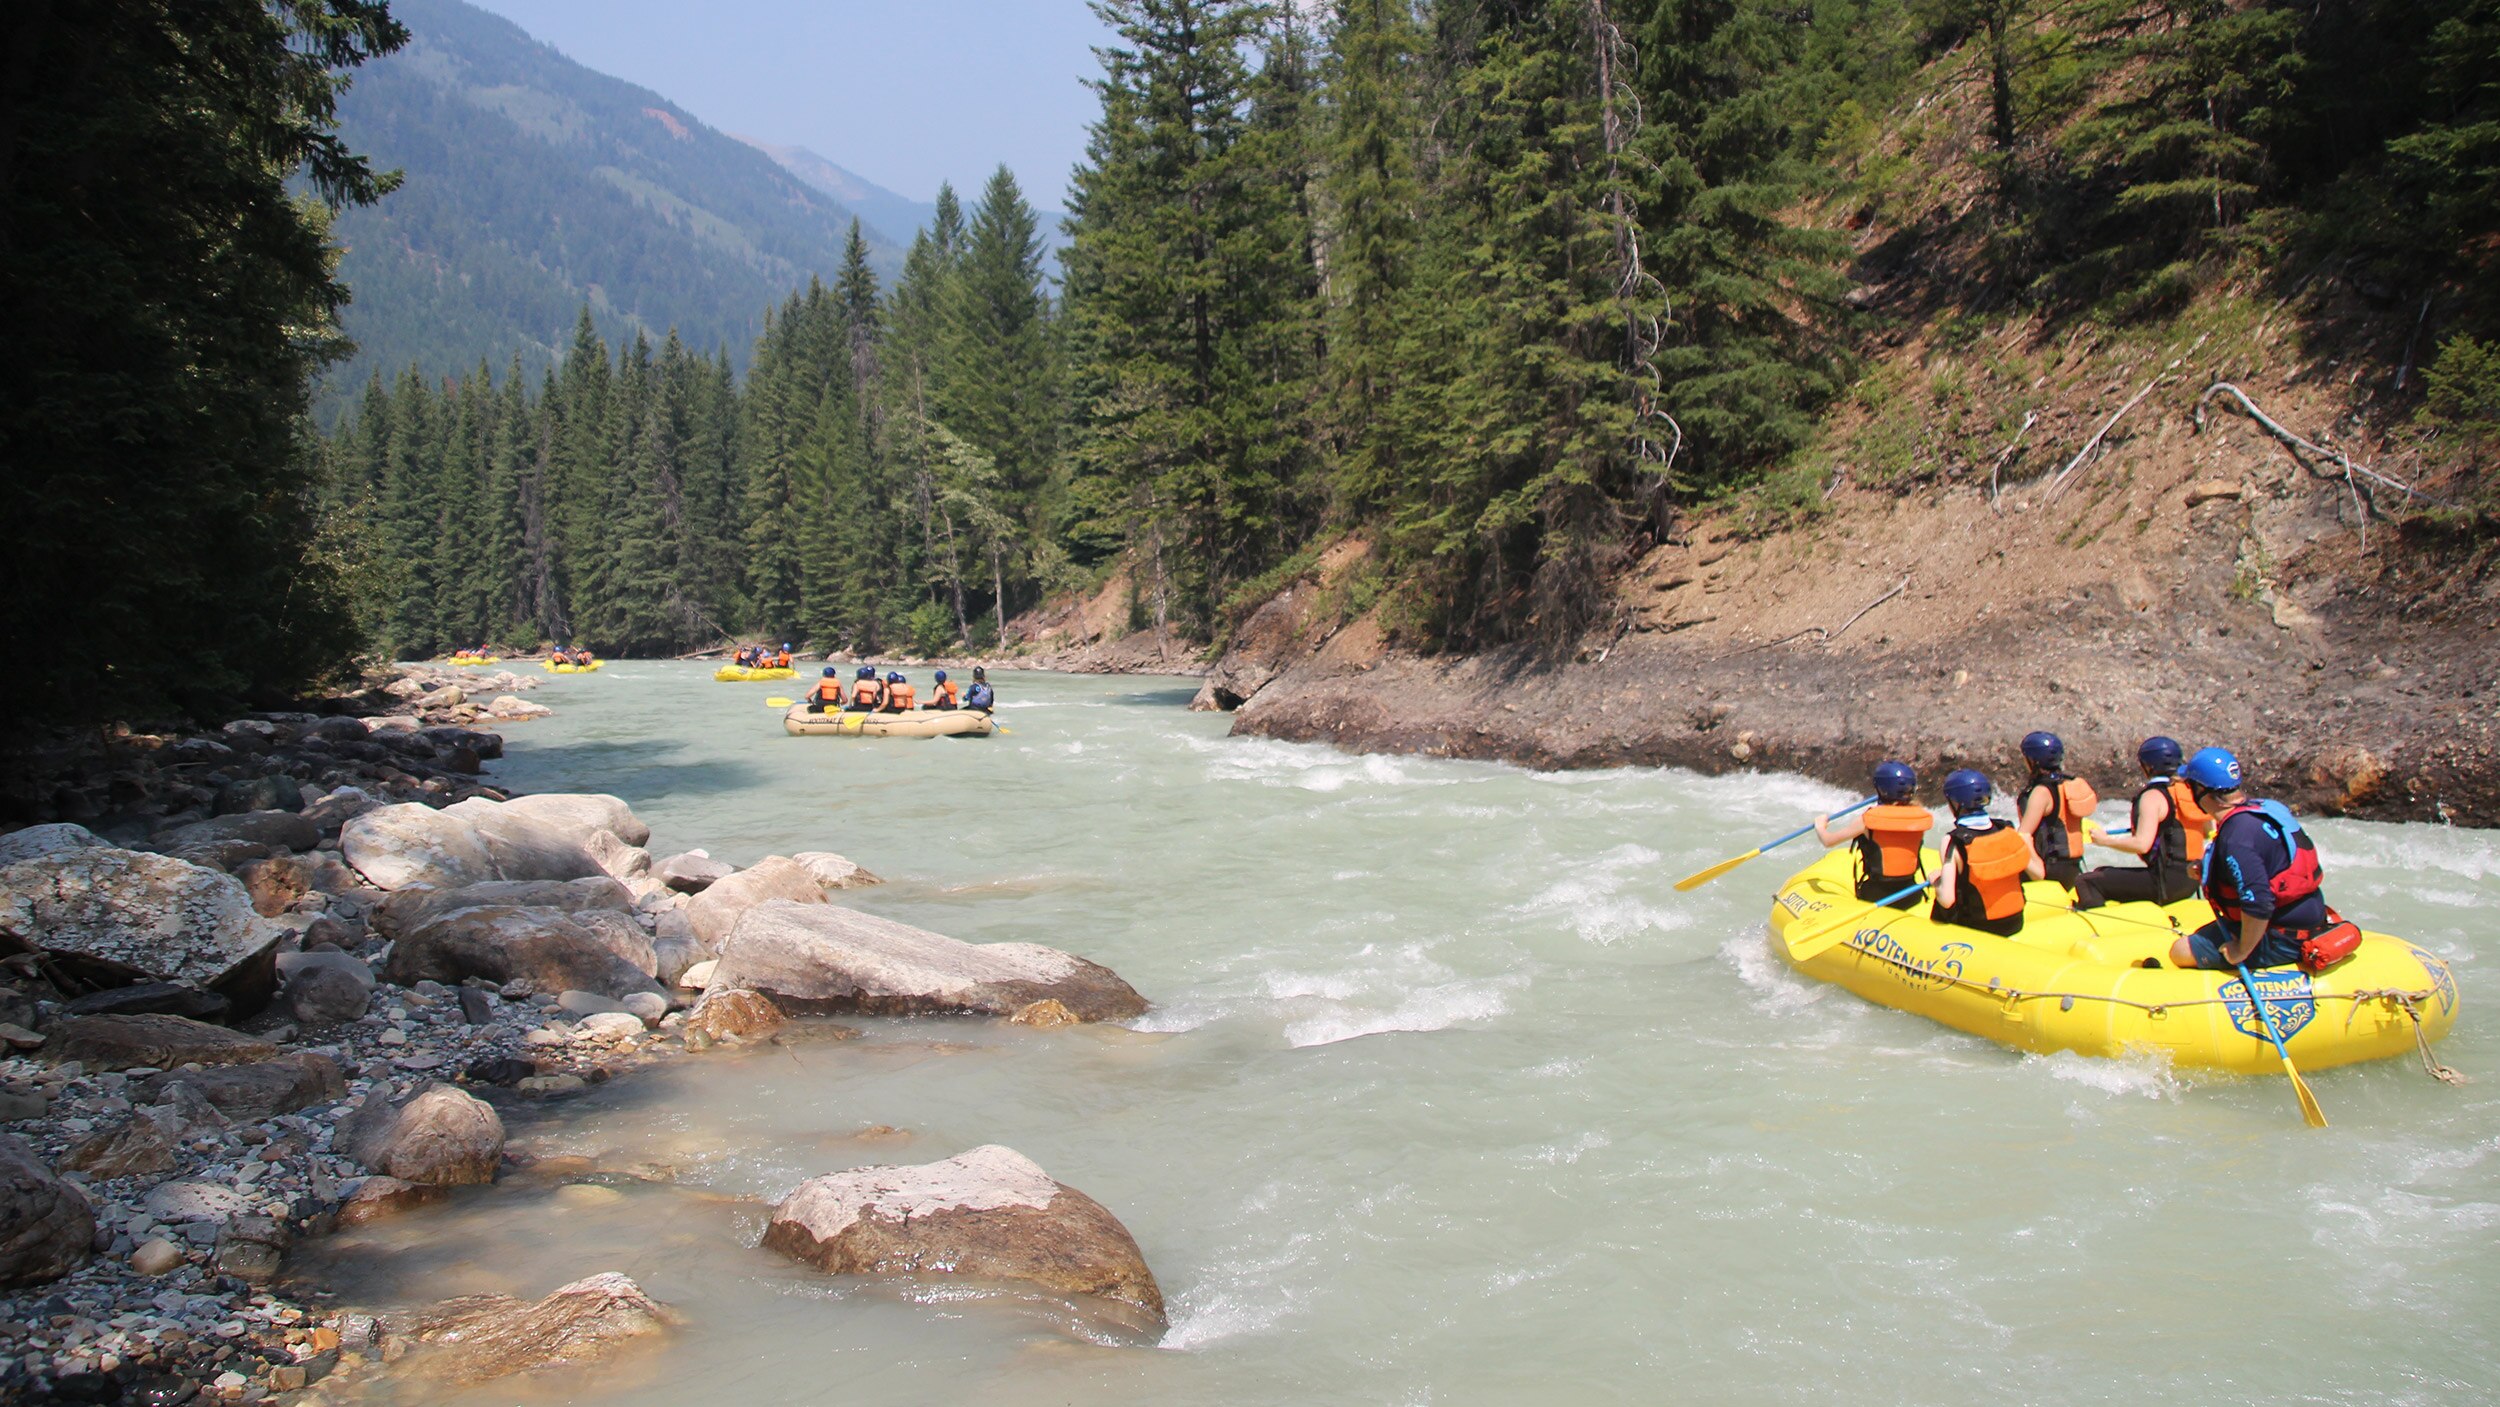 Groupes de personnes faisant du rafting dans une rivière